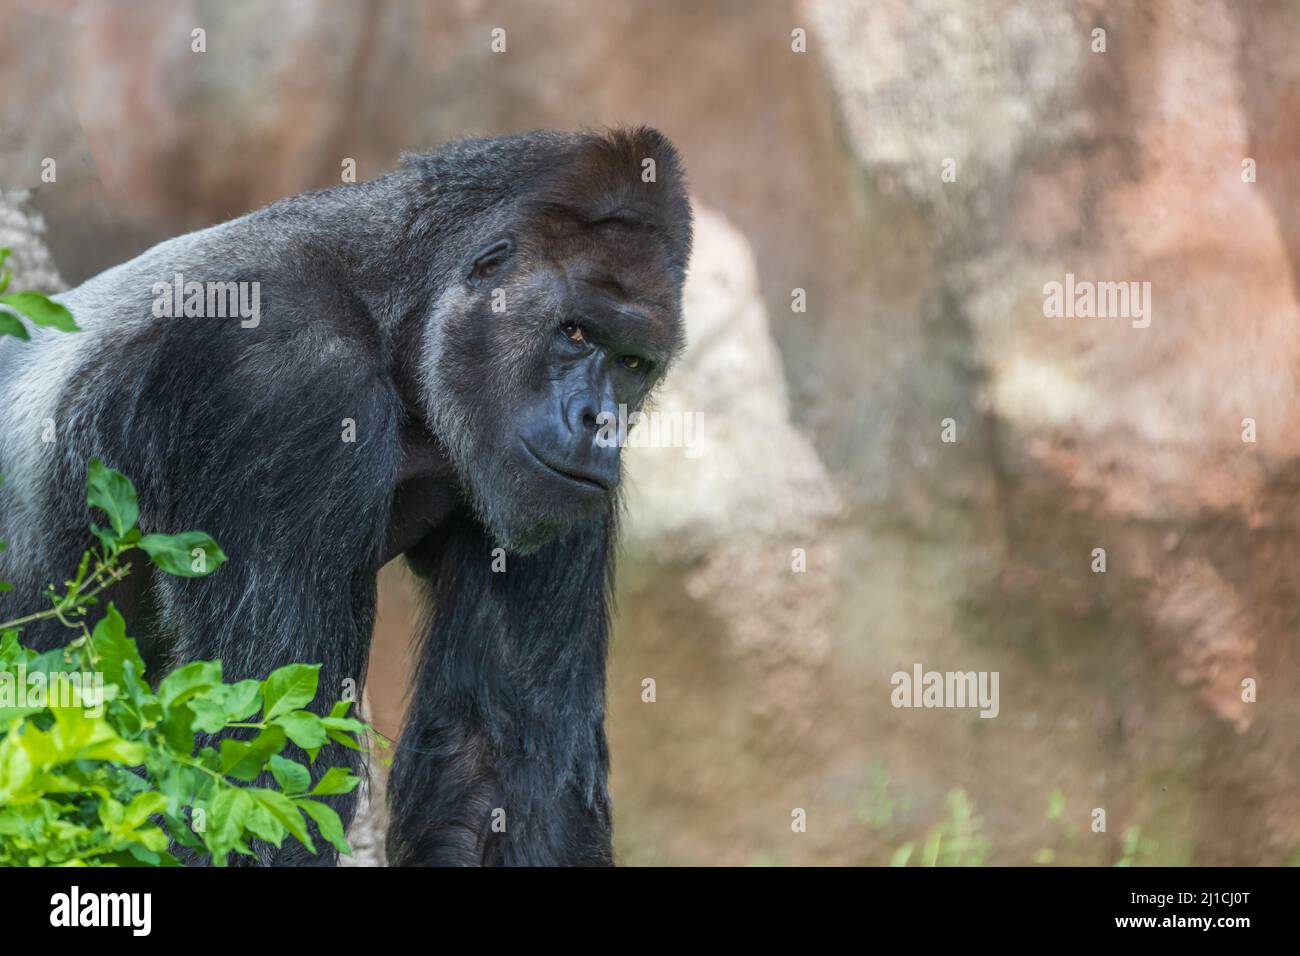 Porträt eines großen schwarzen Gorillas in der Natur. Stockfoto